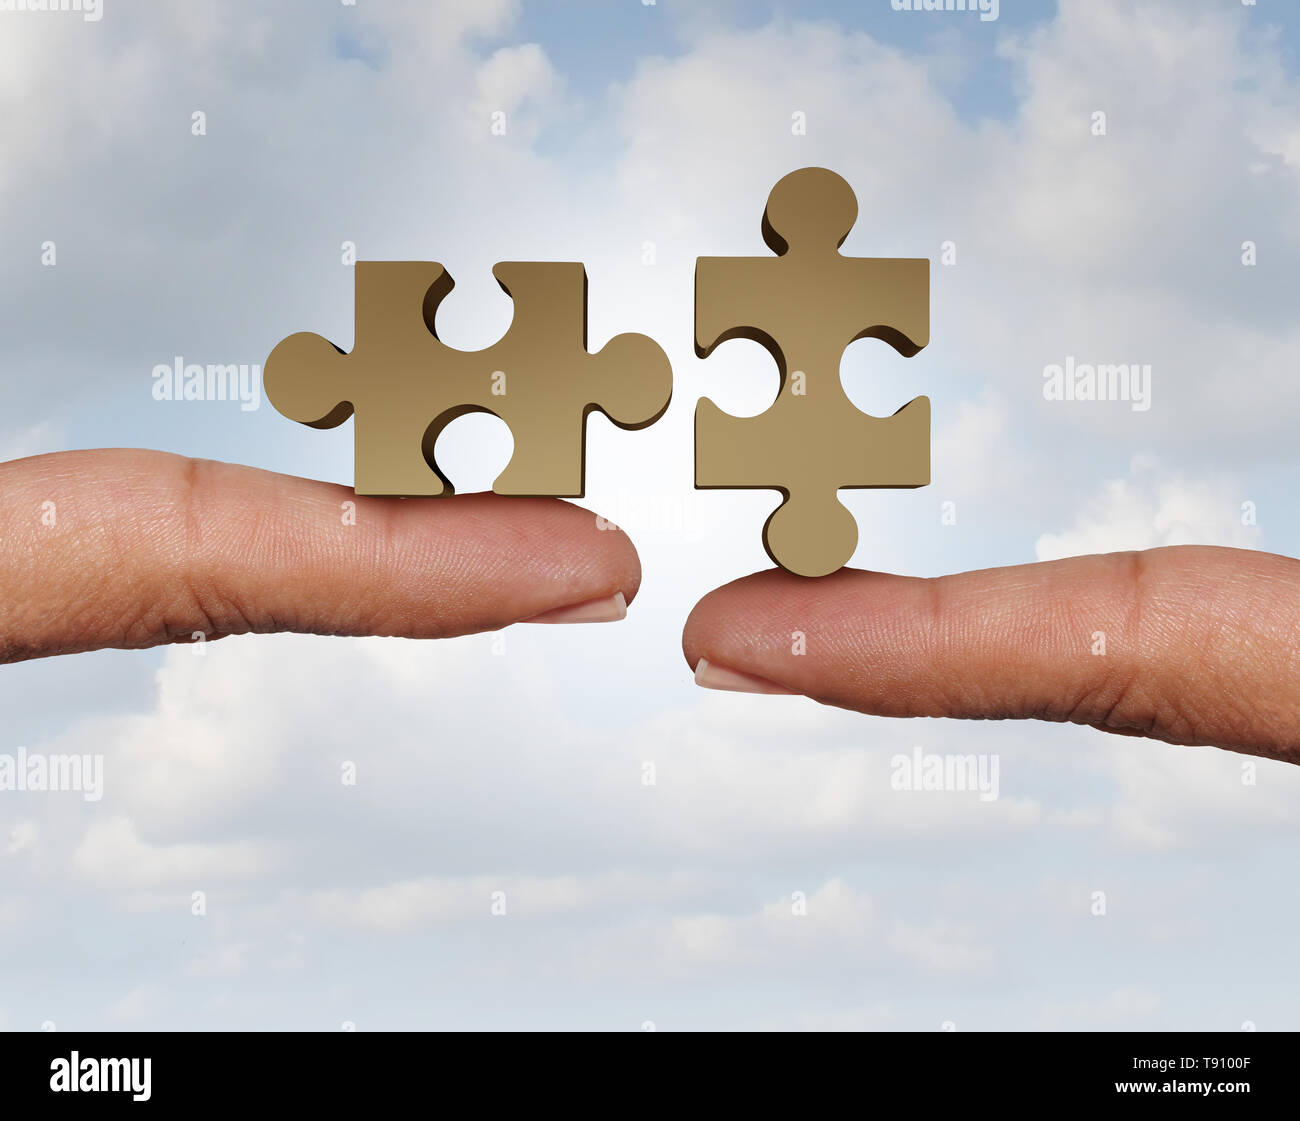 Versuchen, ein Puzzle als zwei Teile miteinander verbinden insgesamt als eine kooperative Geschäftsbeziehung in Form zu verbinden. Stockfoto